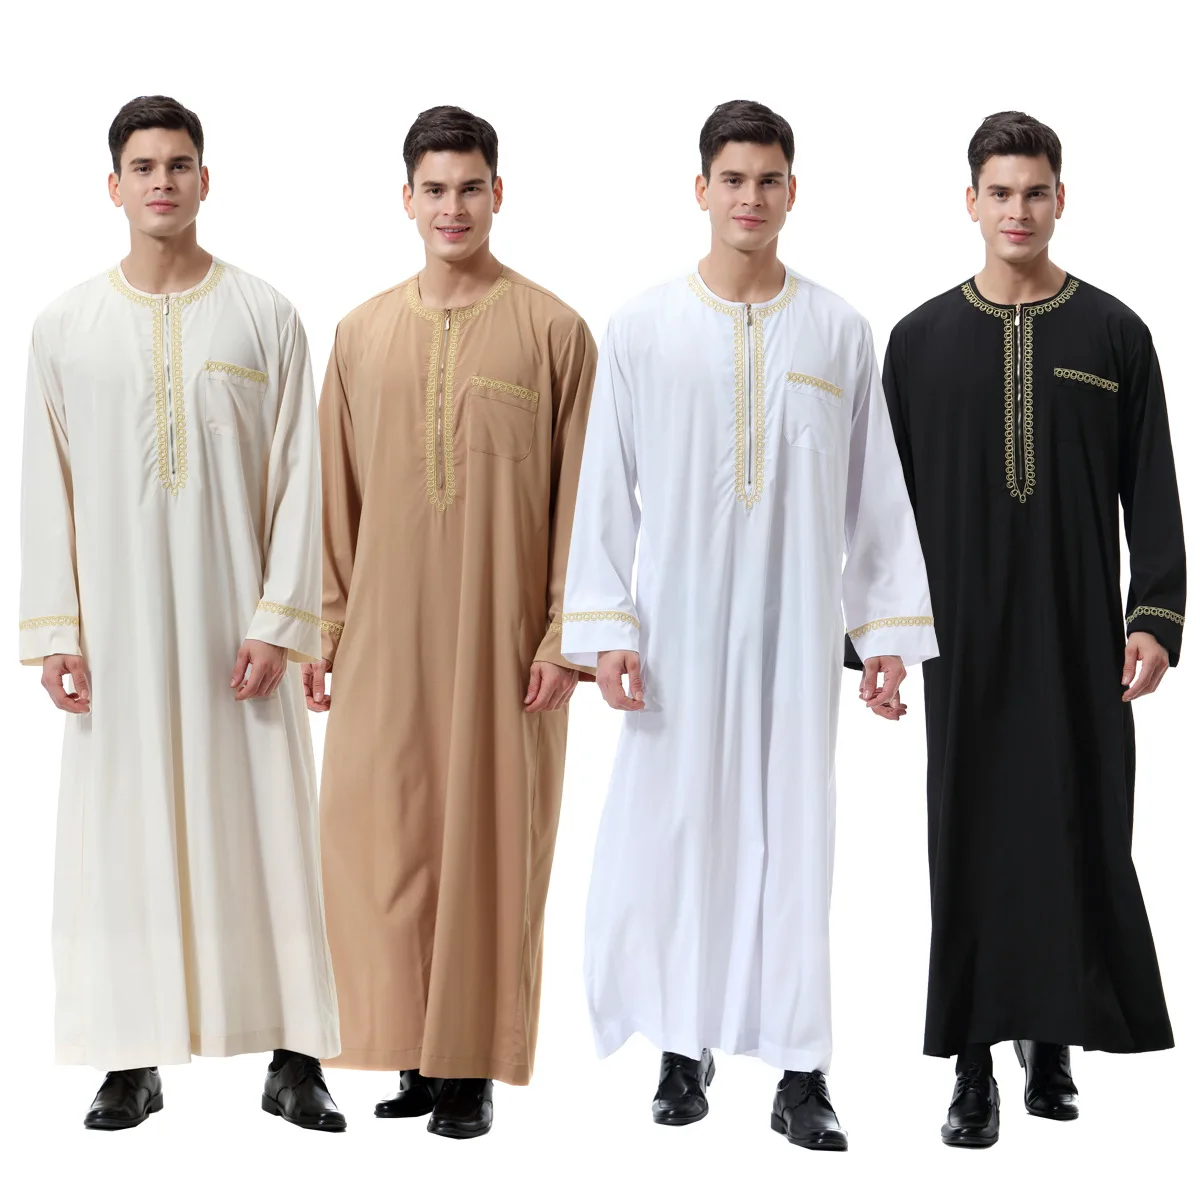 Мусульманская одежда, мужское платье, Арабская Ayaba, Саудовская Аравия, Abaya Homme, одежда Djellaba, мусульманская Мода, мужской кафтан Qamis 2021 от AliExpress RU&CIS NEW